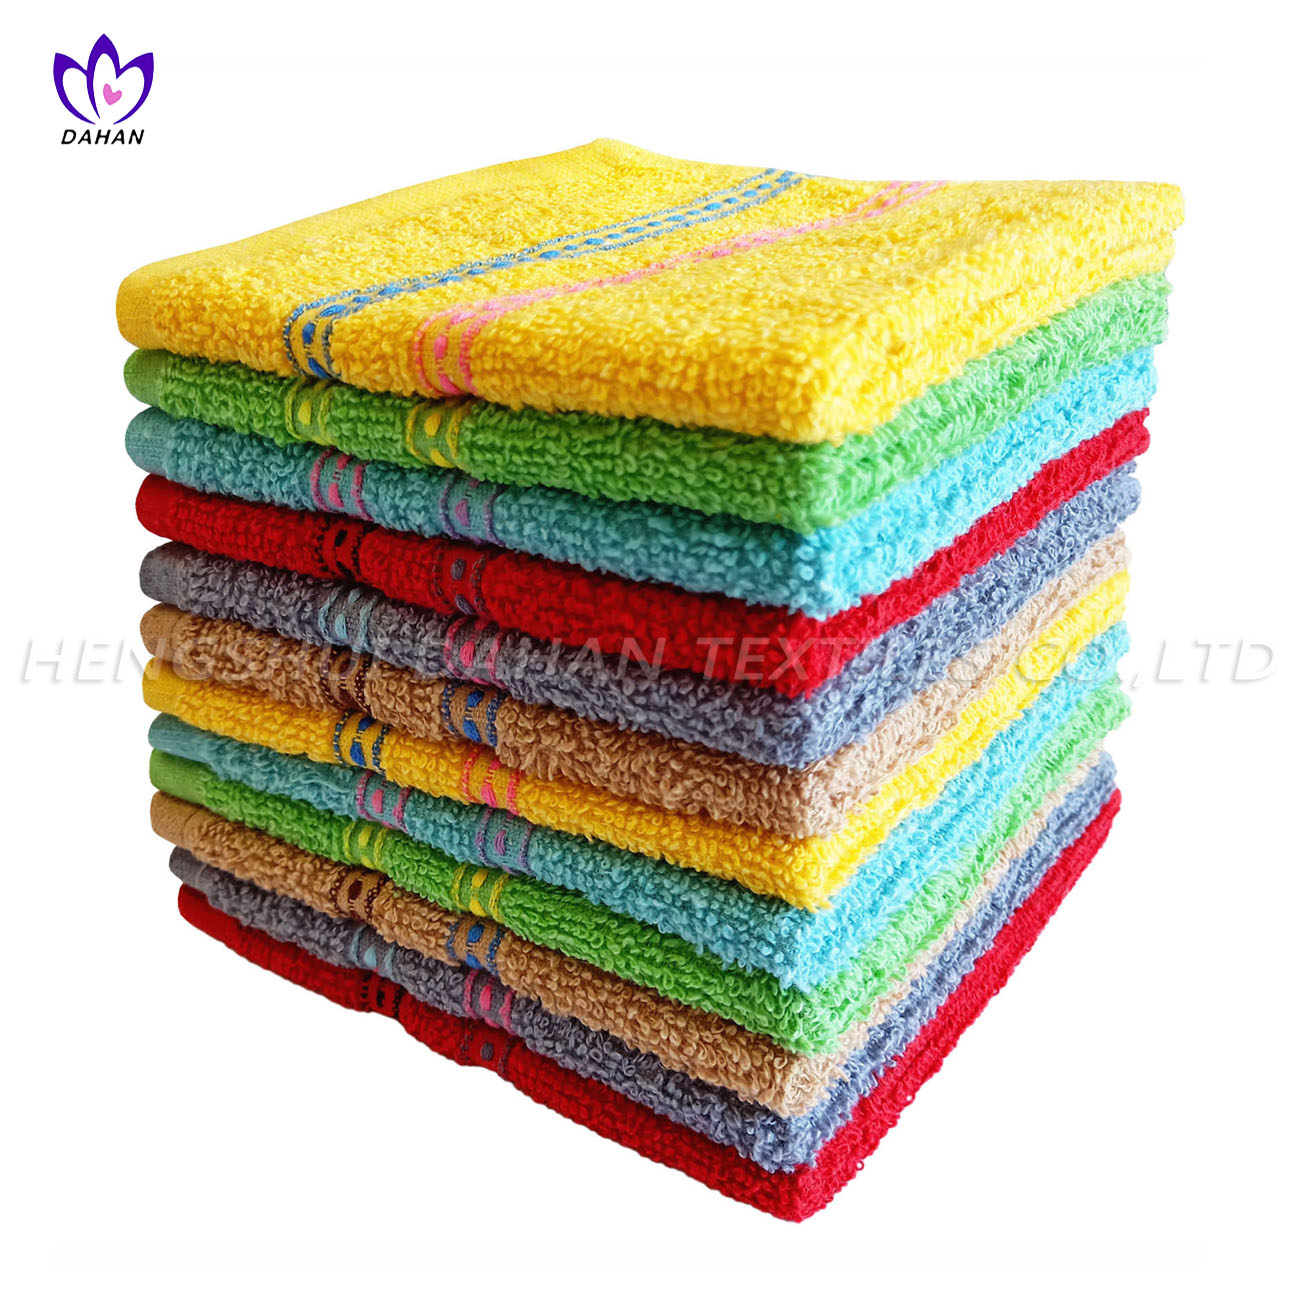 422CR Cotton colorful wash cloths, kitchen towel.